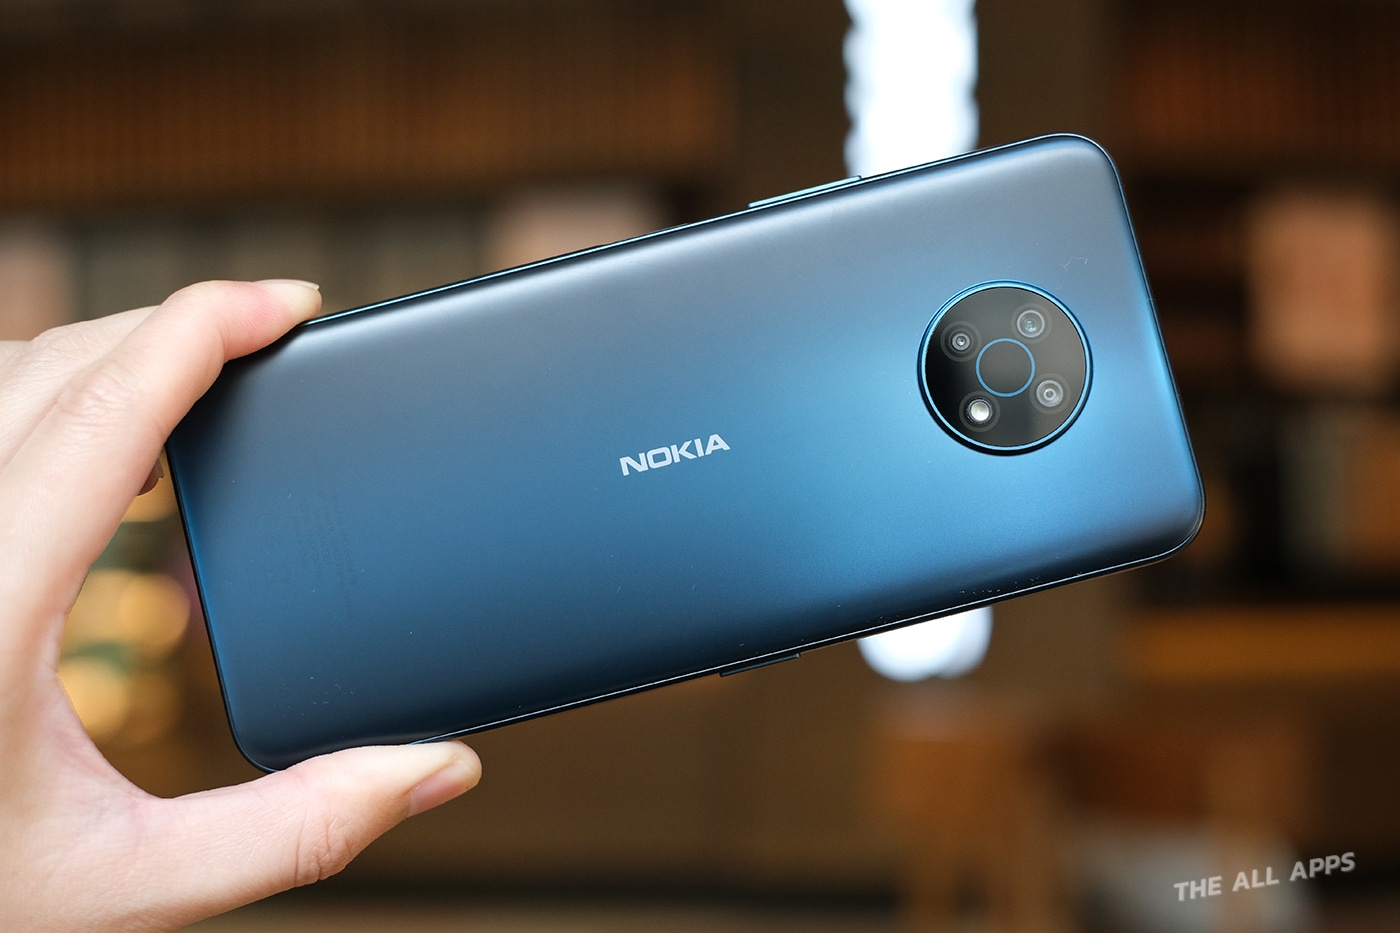 รีวิว Nokia G50 สมาร์ทโฟน 5G หน้าจอใหญ่ ดีไซน์สวย การันตีอัปเกรด Android นาน 2 ปี